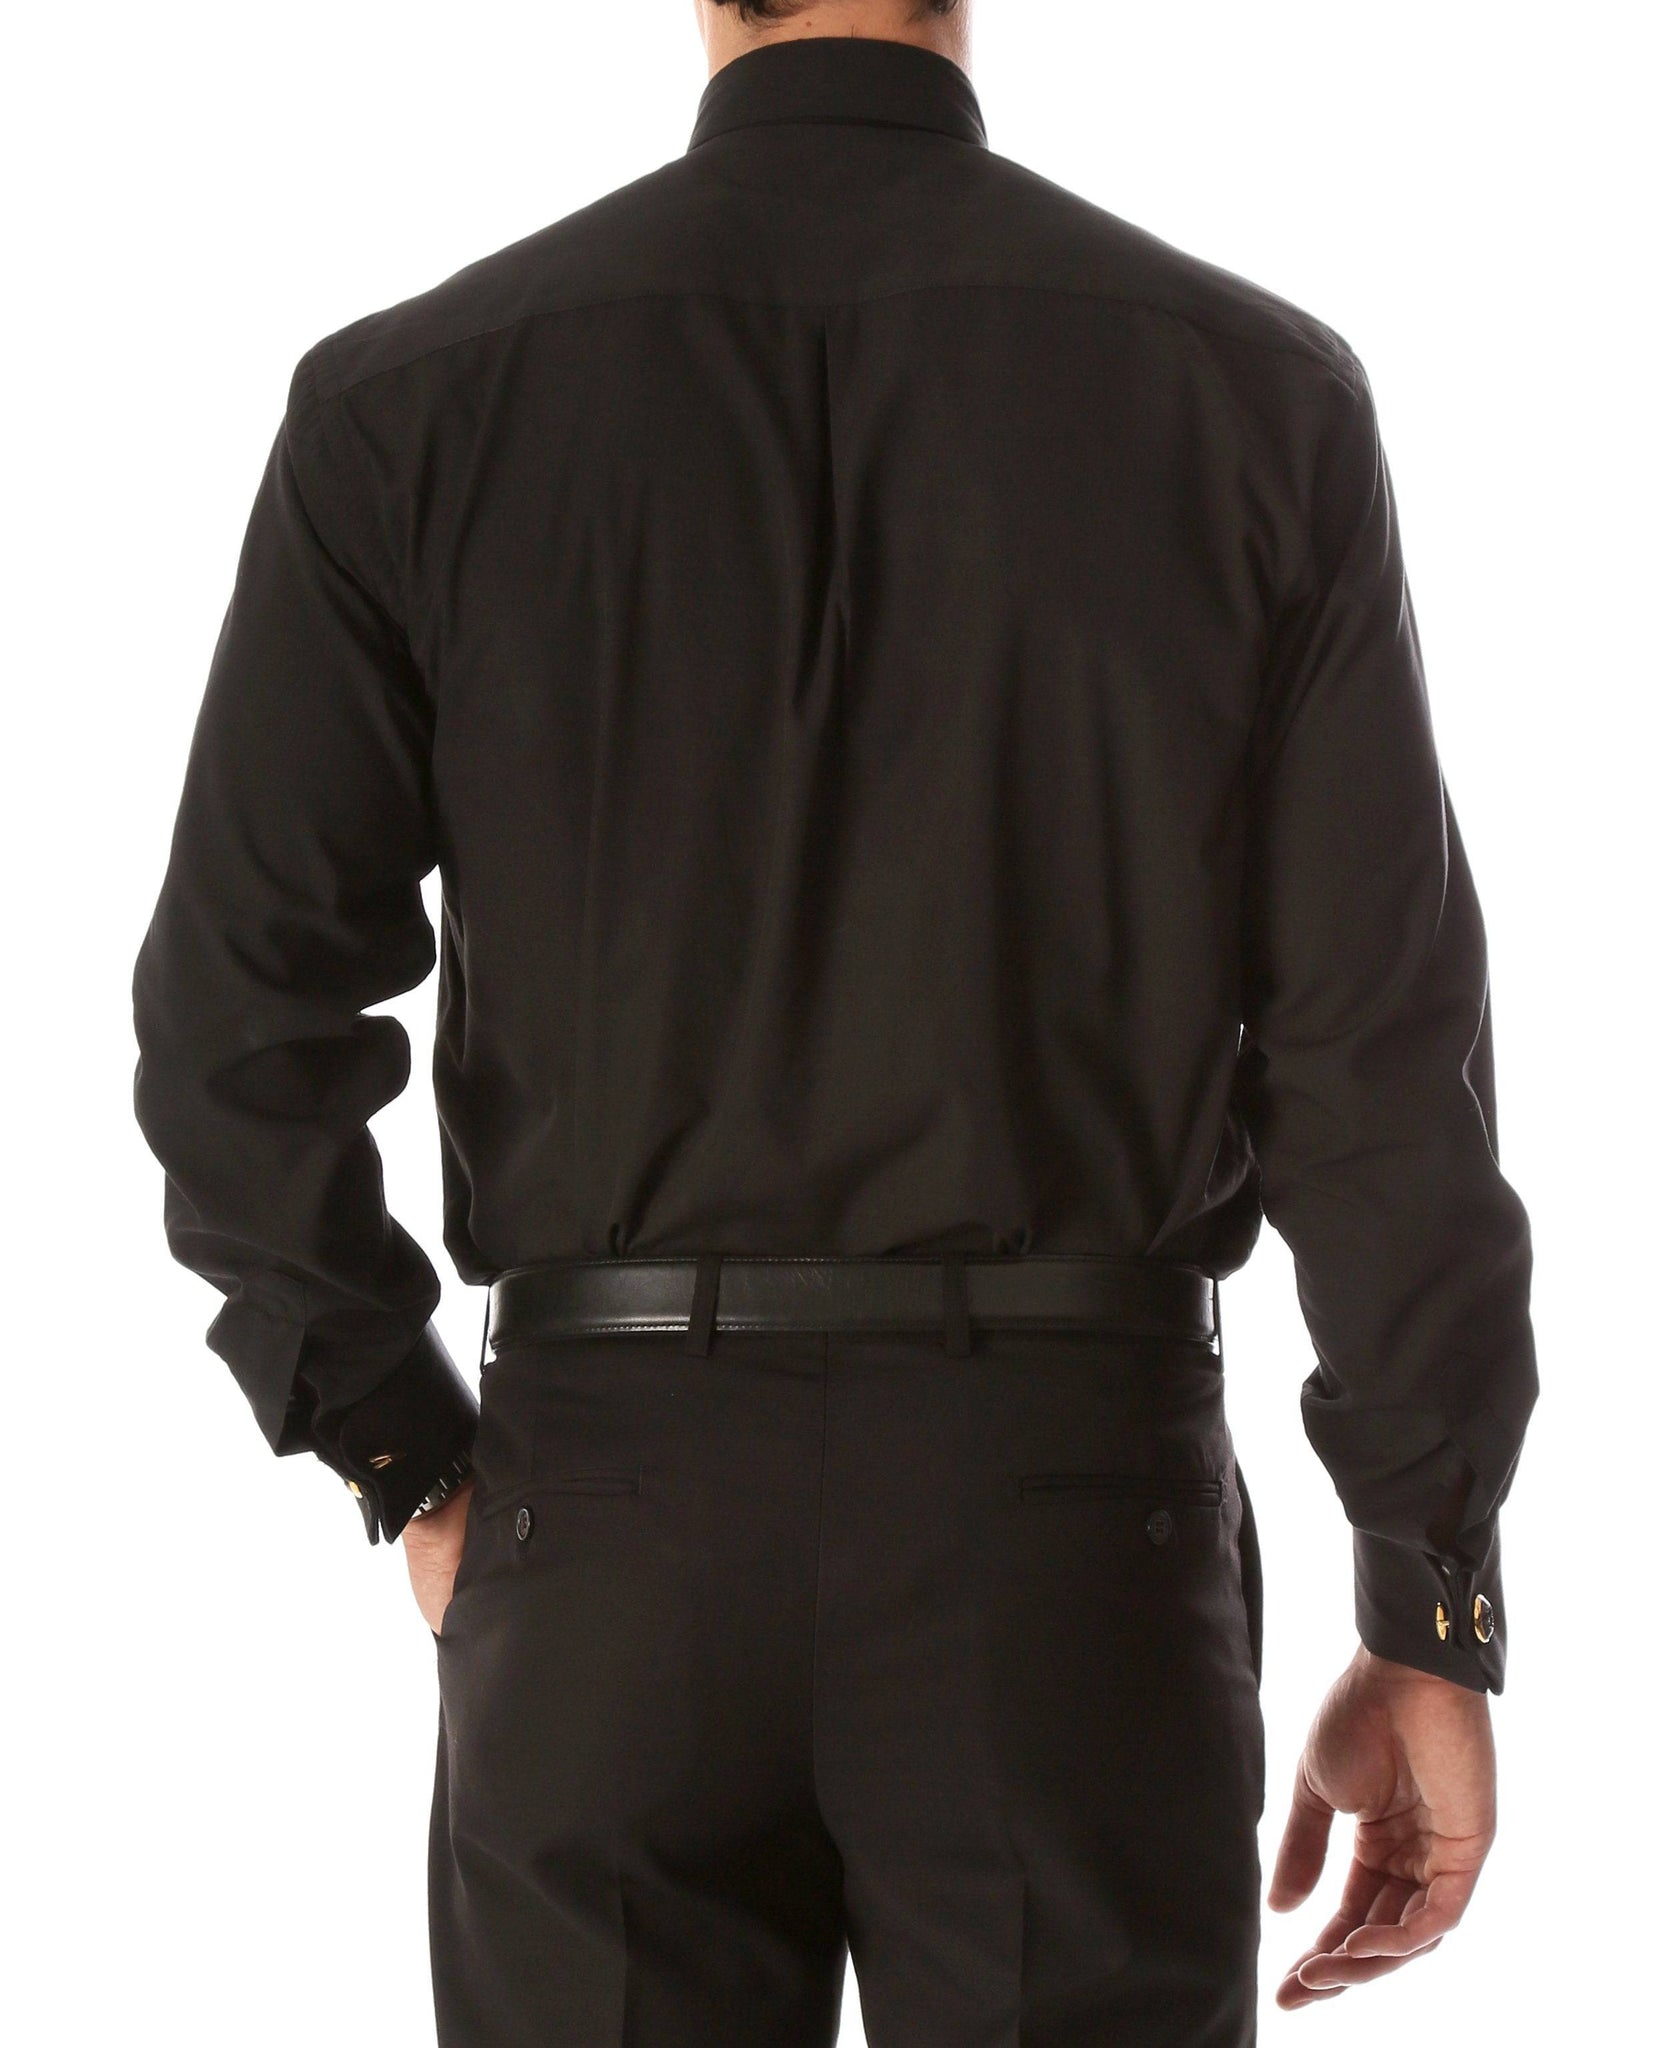 Men's Black Clergy Shirt